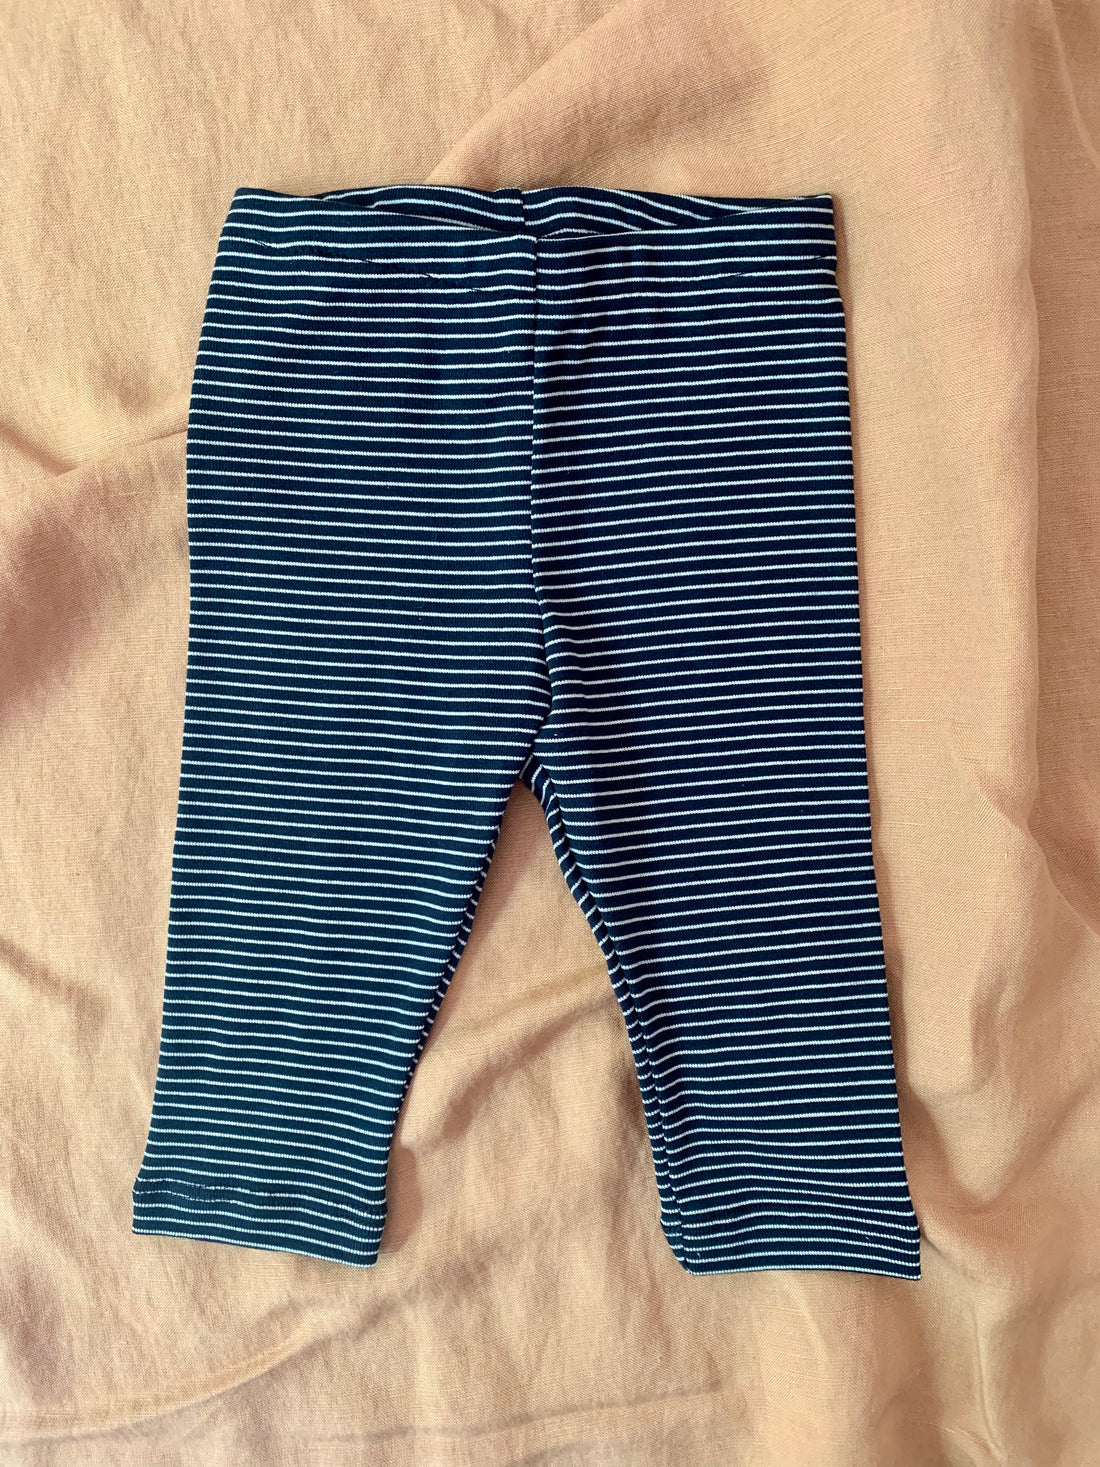 Leggings No2019b, navy blue stripes